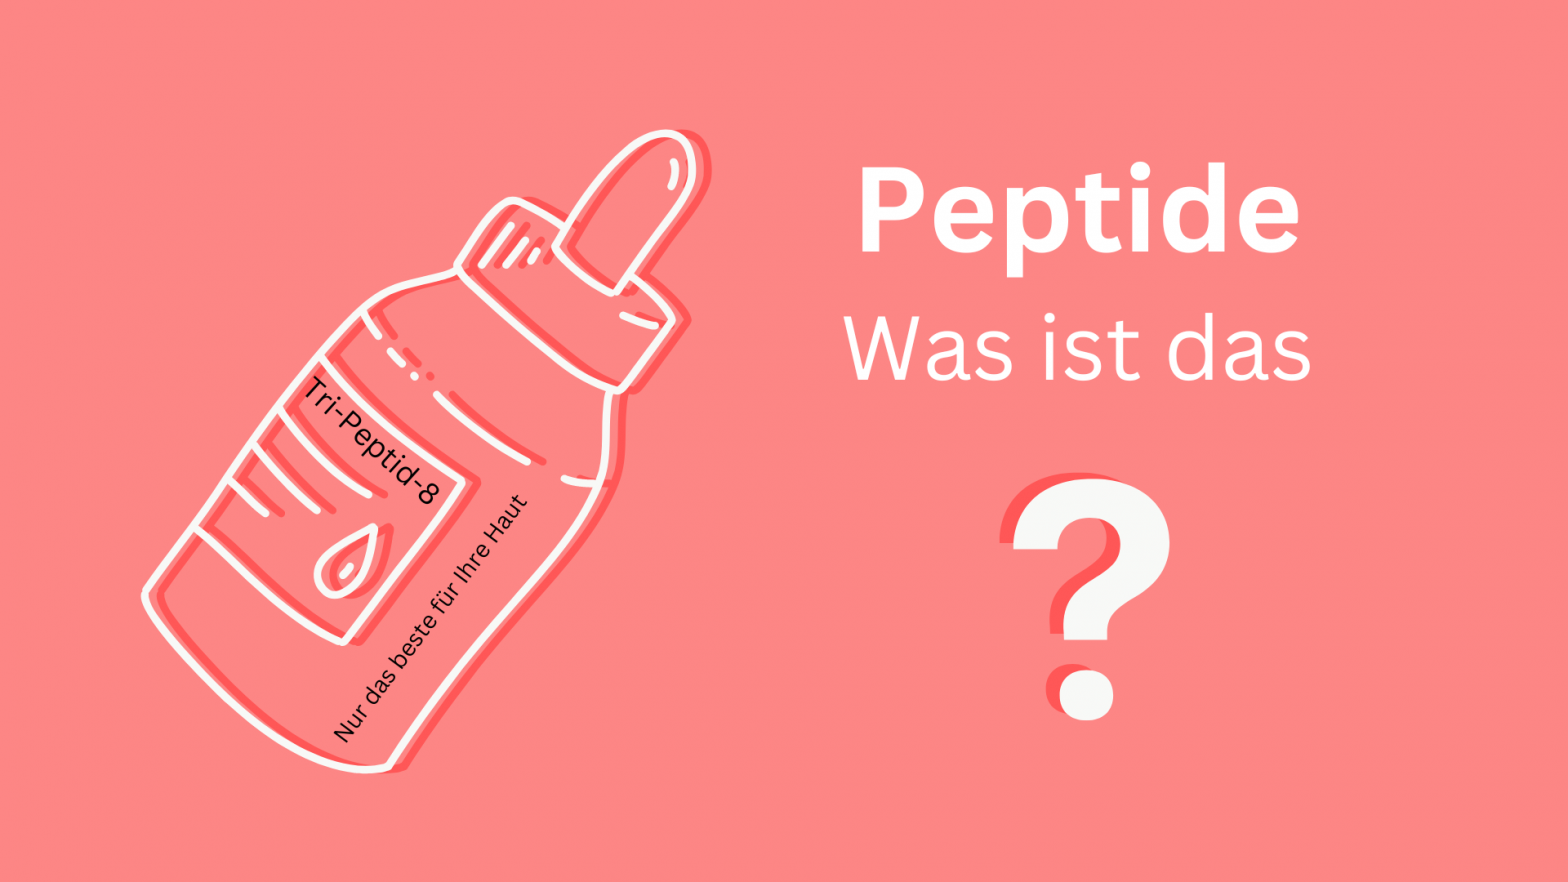 Frage: Peptide was ist das?